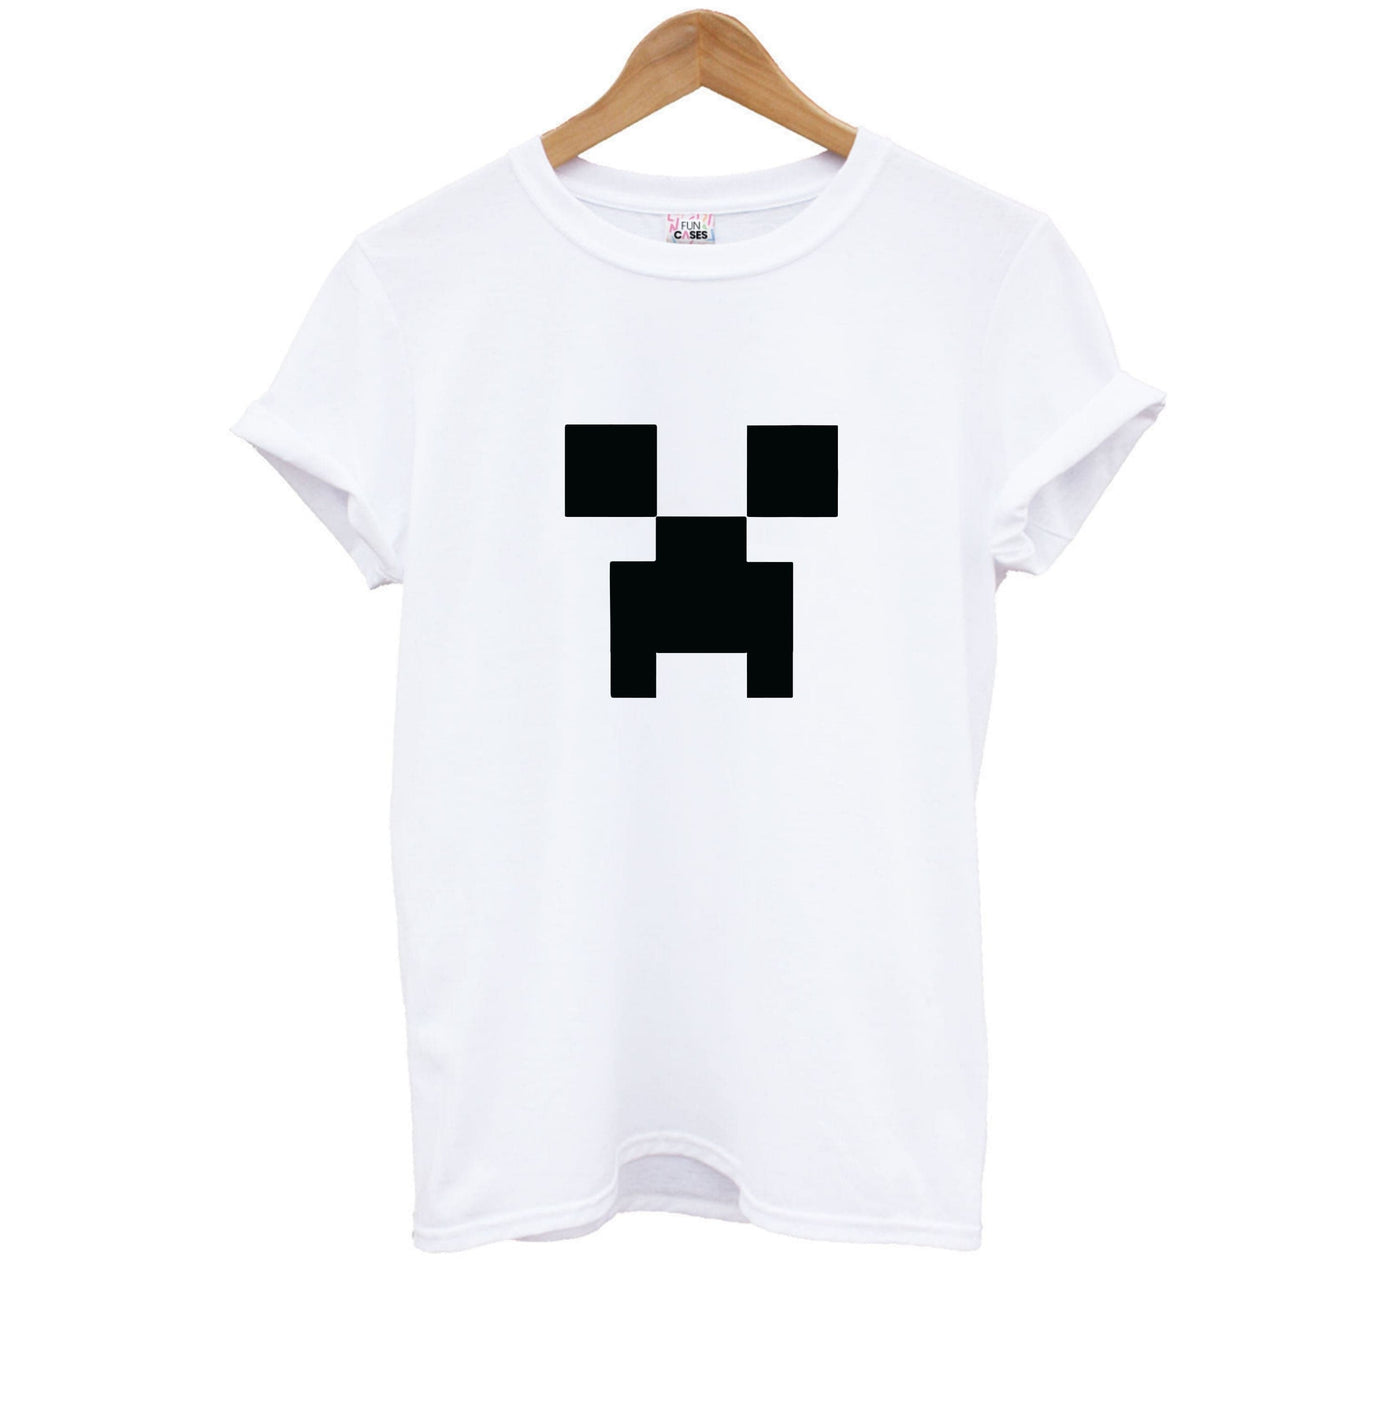 Kids - Creeper Face, Minecraft T-Shirt